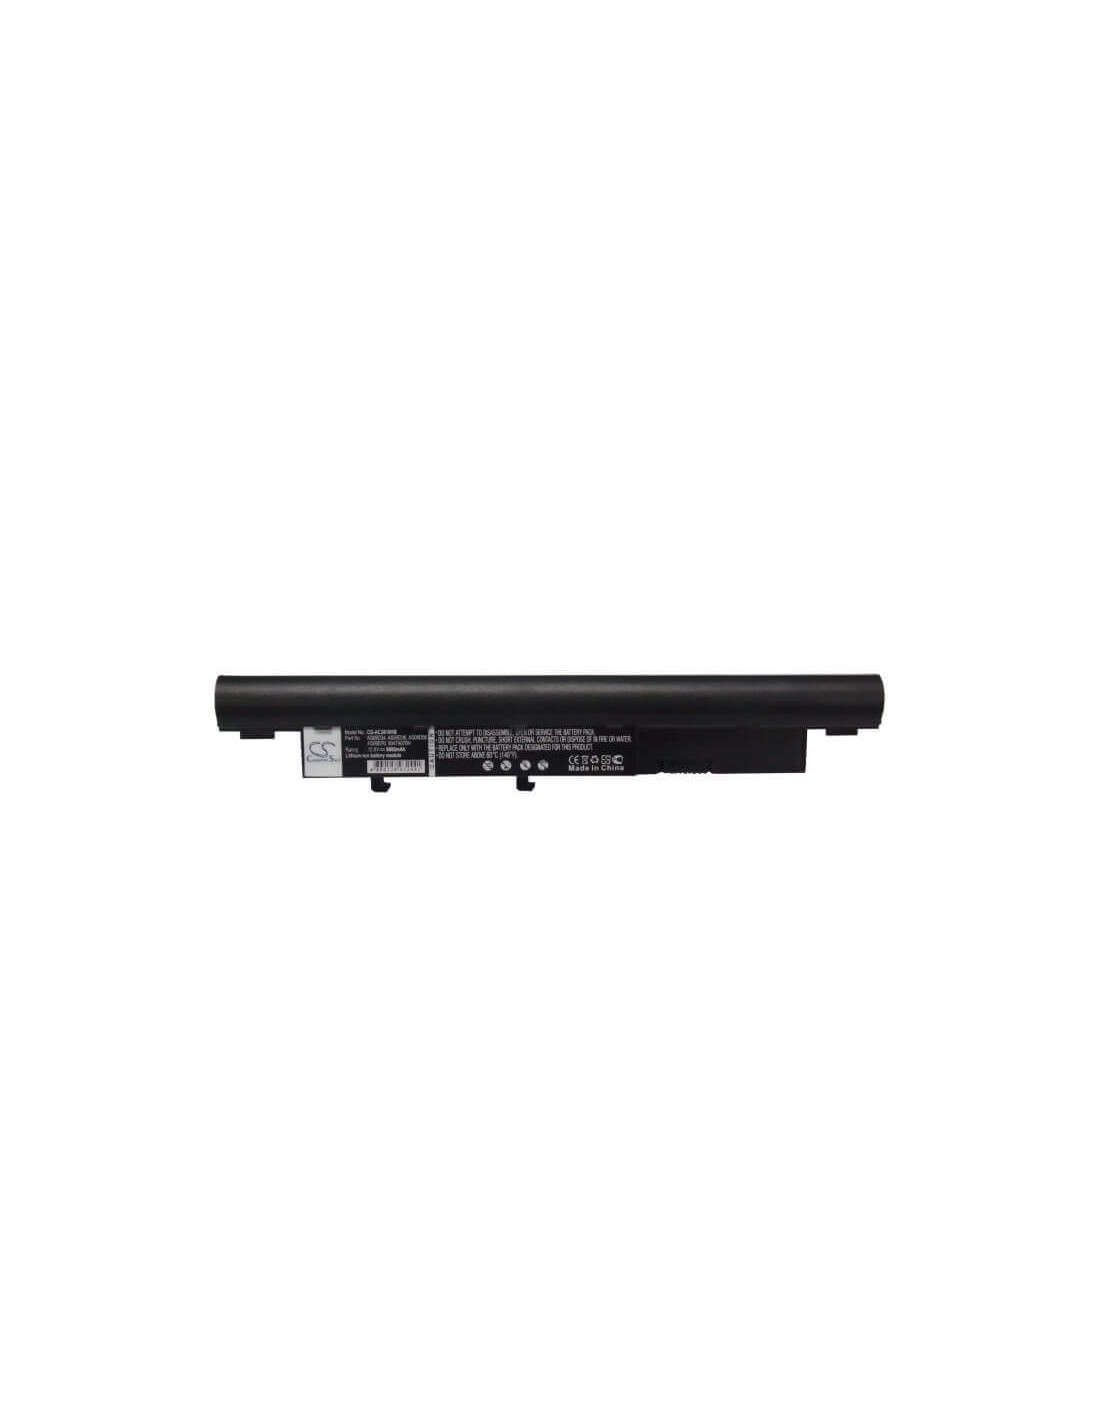 Black Battery for Acer Aspire Timeline 3810t, Aspire Timeline 3810tz, Aspire Timeline 3810t-6415 10.8V, 6600mAh - 71.28Wh